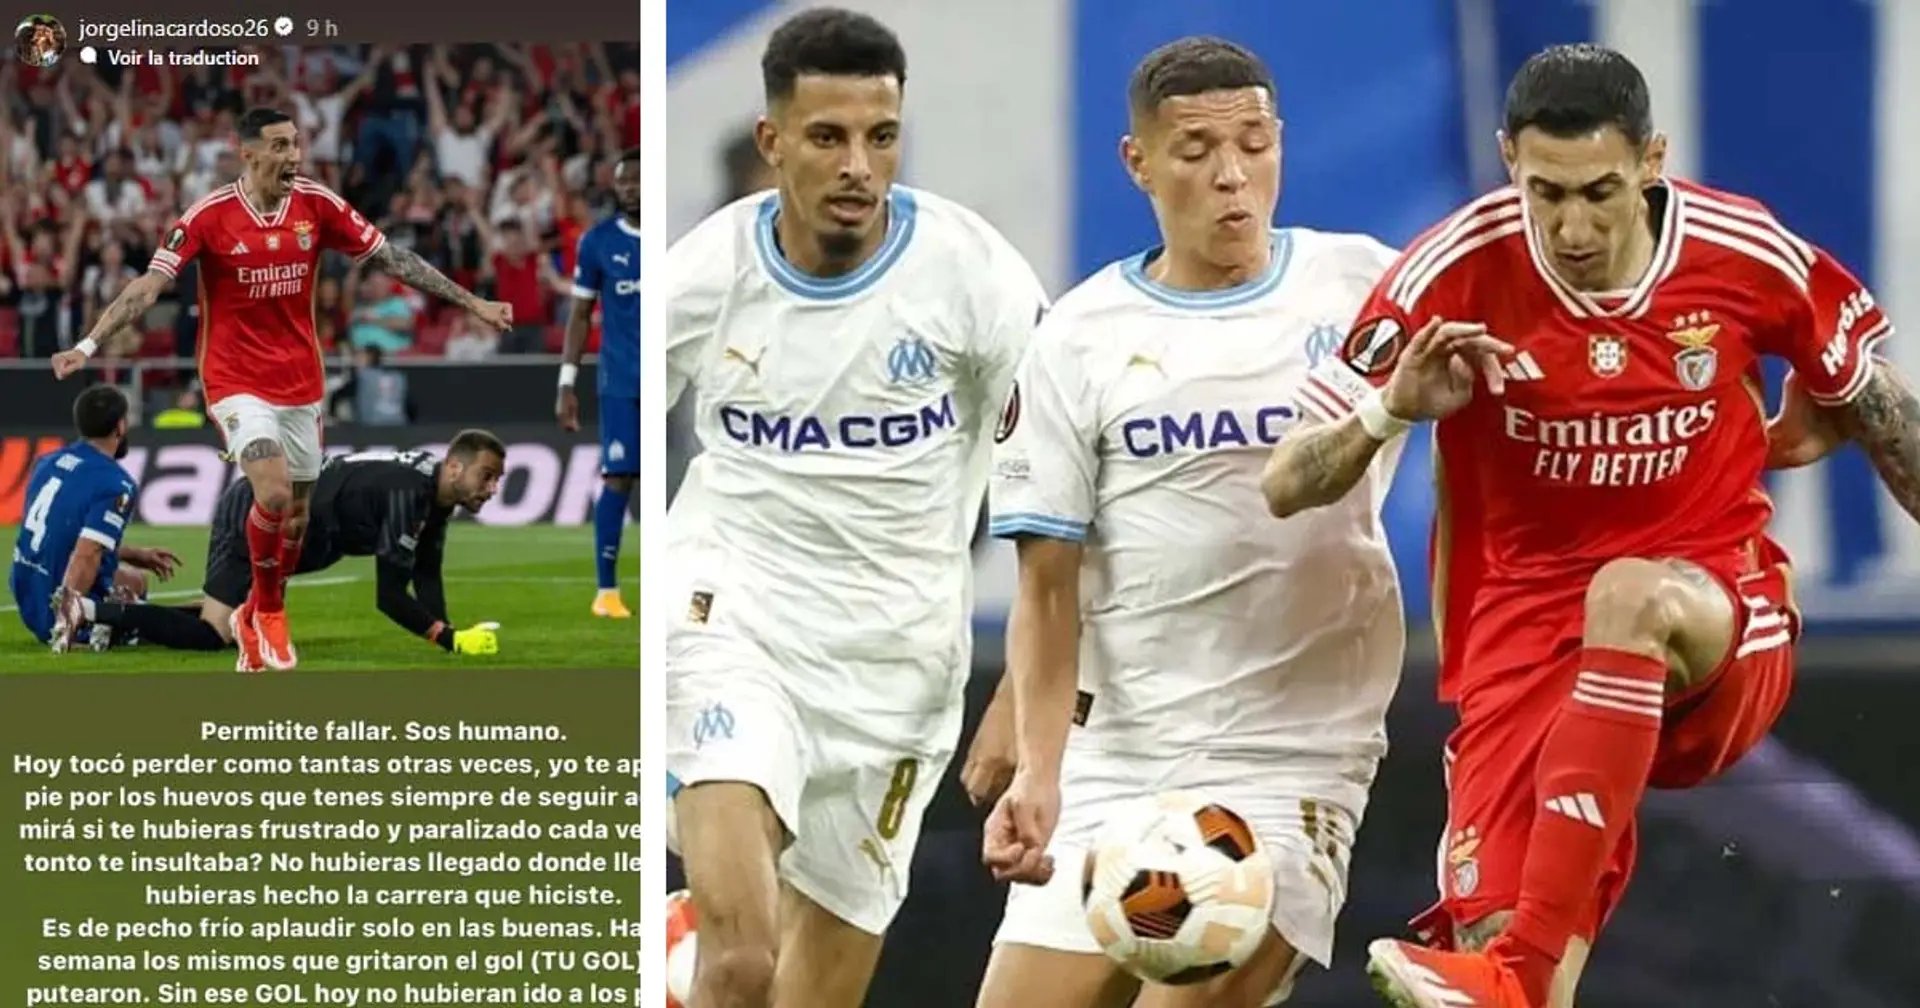 Angel Di Maria insulté par des supporters de Benfica après son tir au but raté vs OM - sa femme prend sa défense